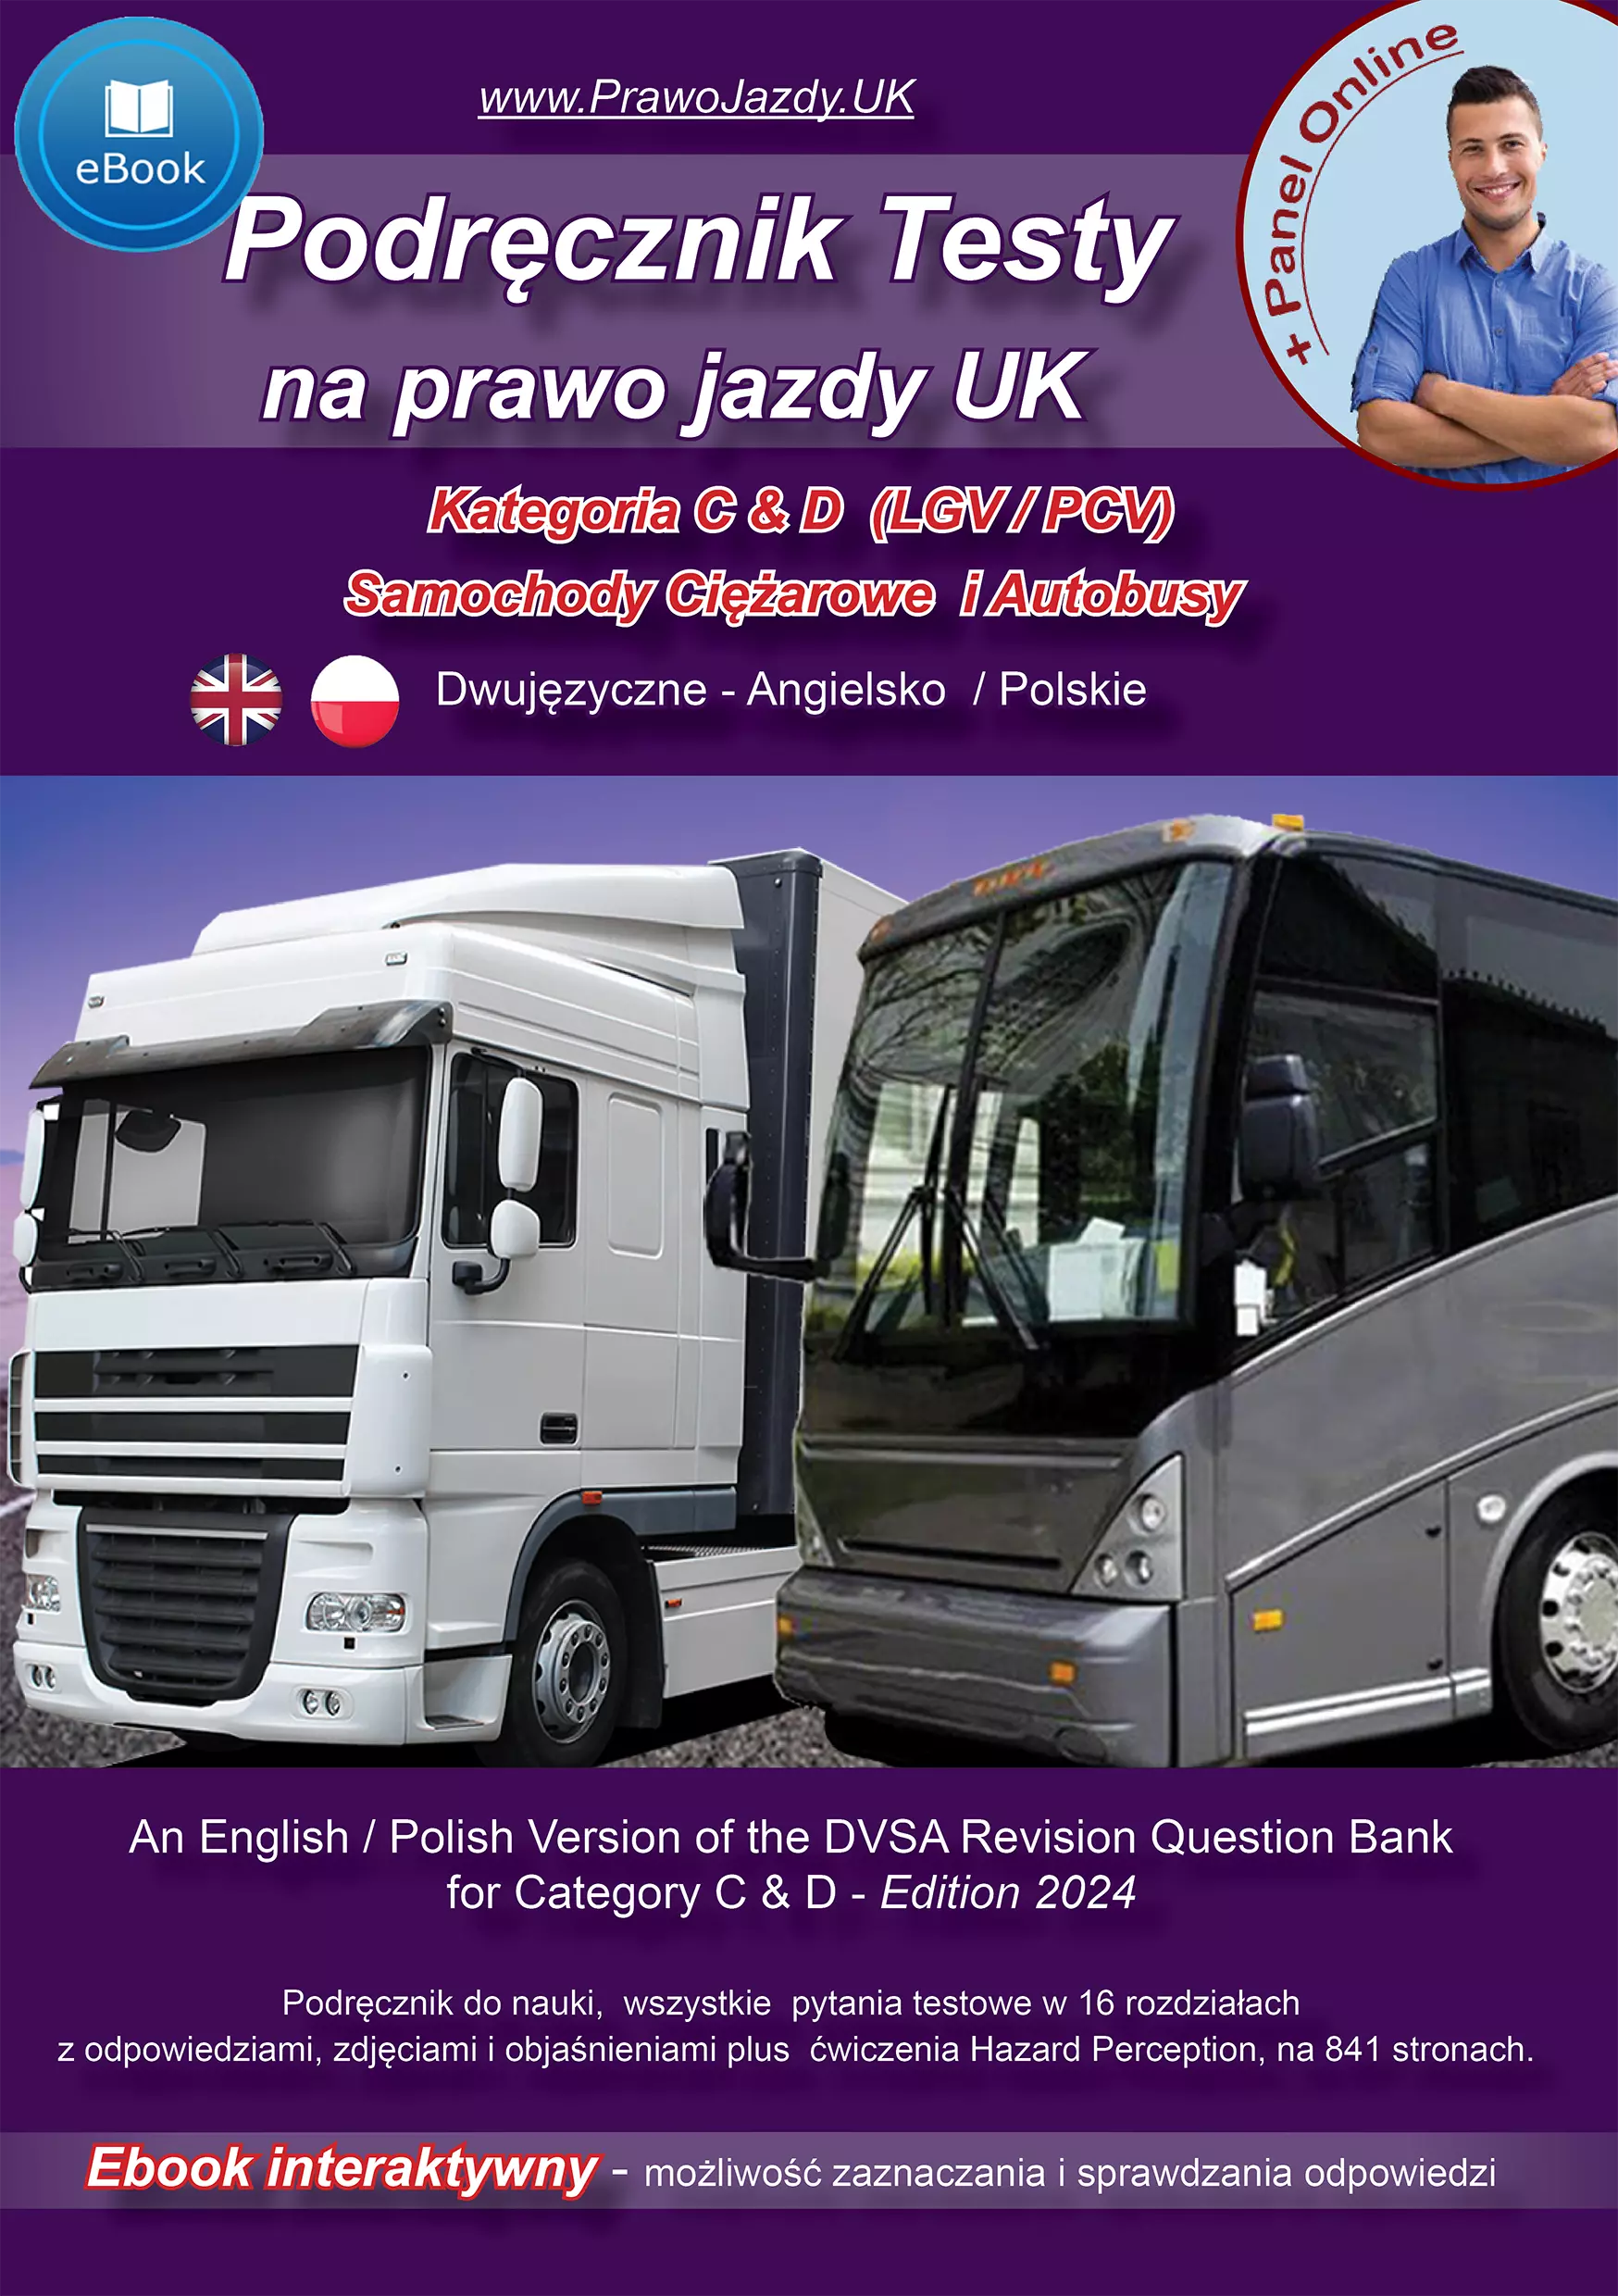 Dwujęzyczne Angielsko - Polskie Testy na prawo jazdy w UK LGV/PCV